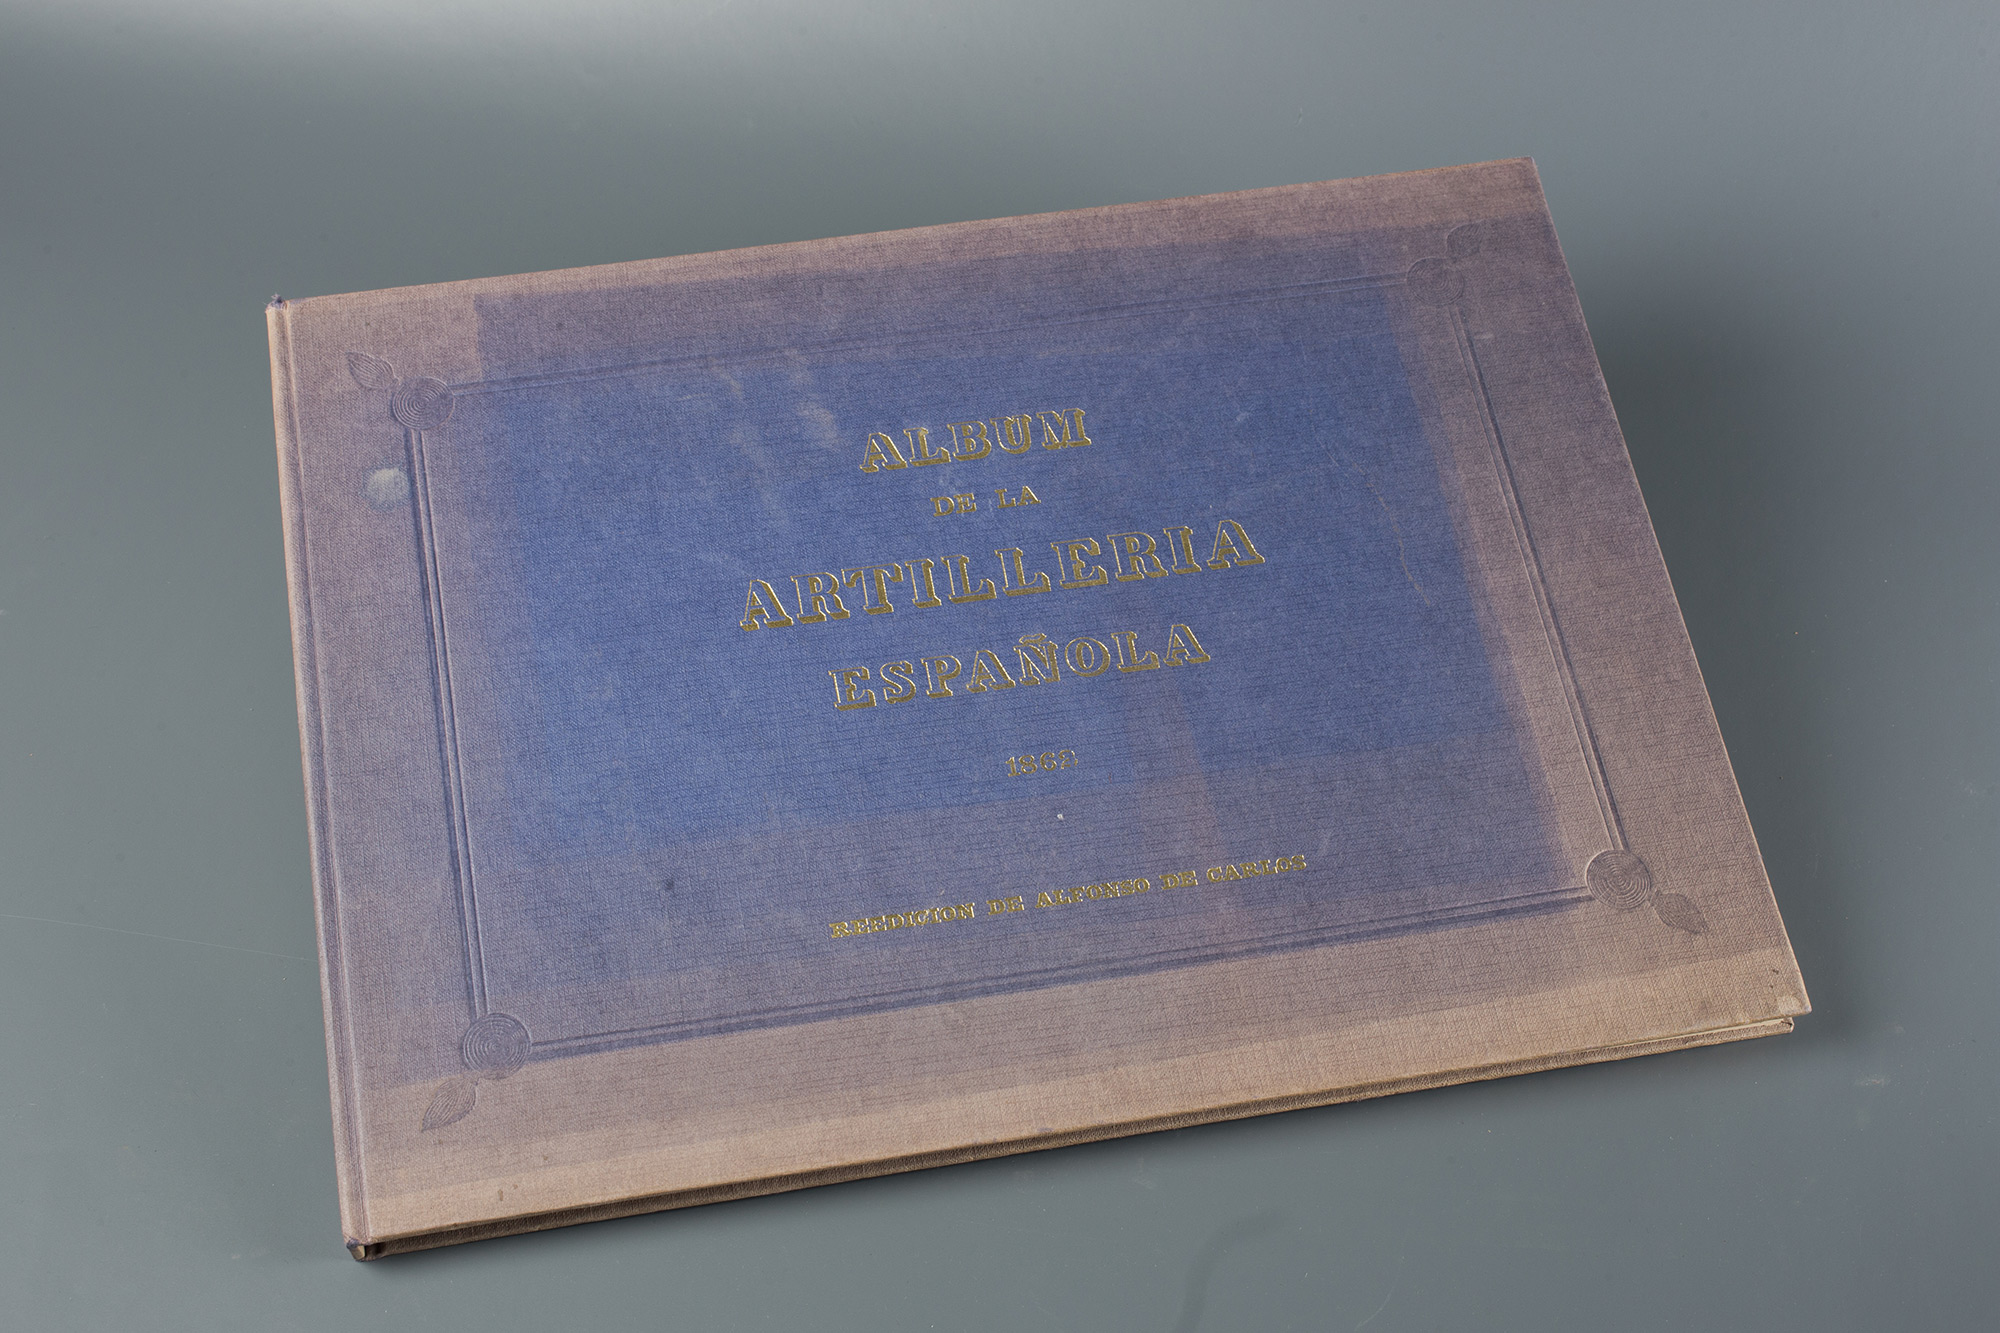 "Album de la Artilleria española. Reedición de Alfonso de C